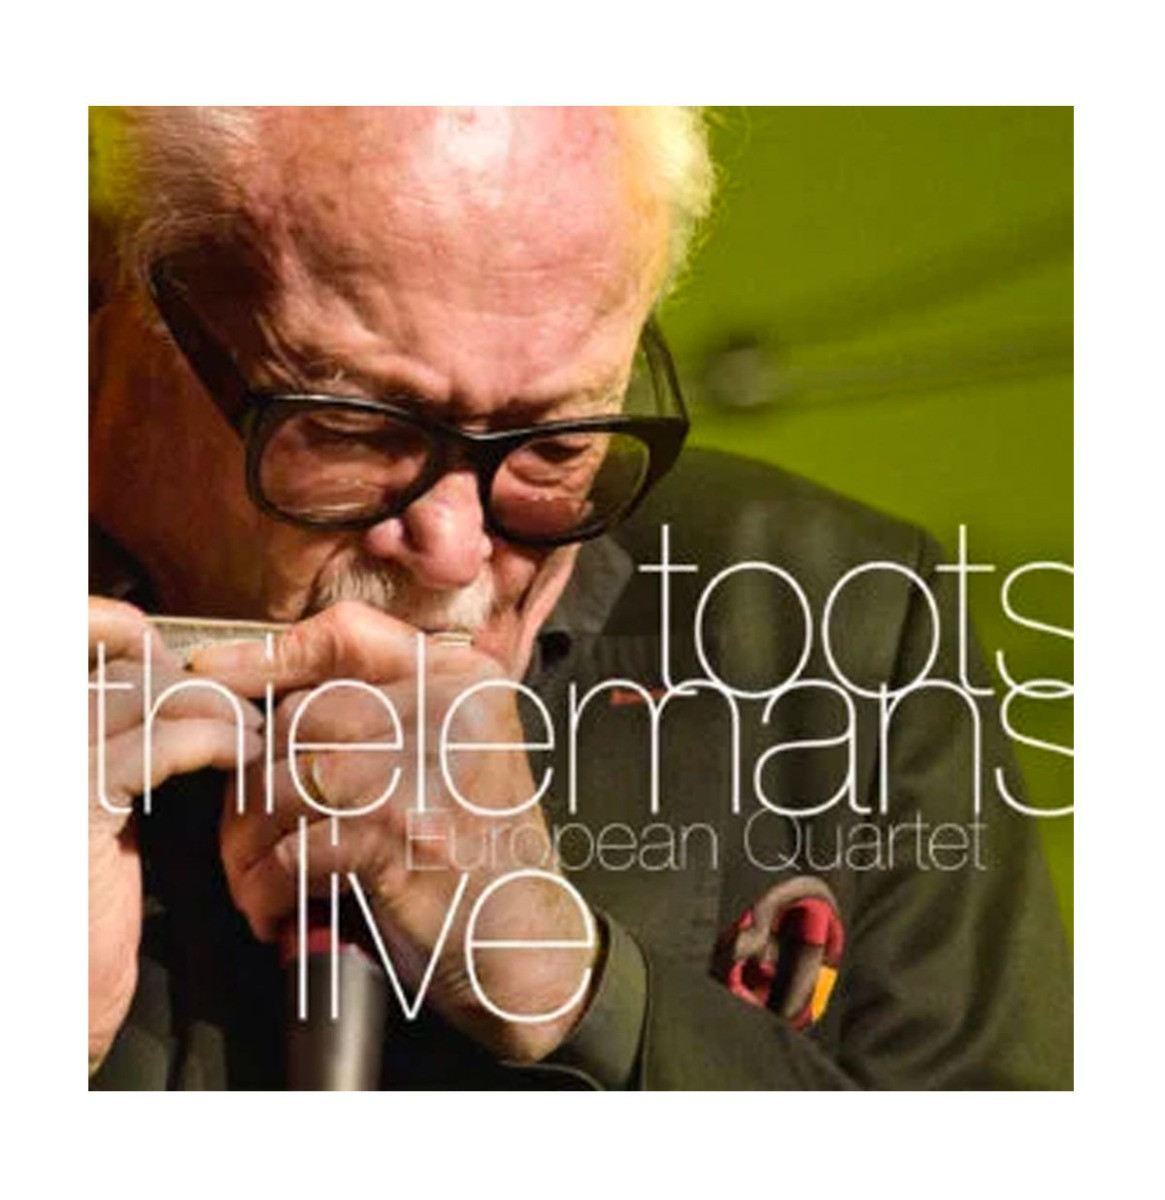 Toots Thielemans - European Quartet Live LP (Record Store Day 2022)